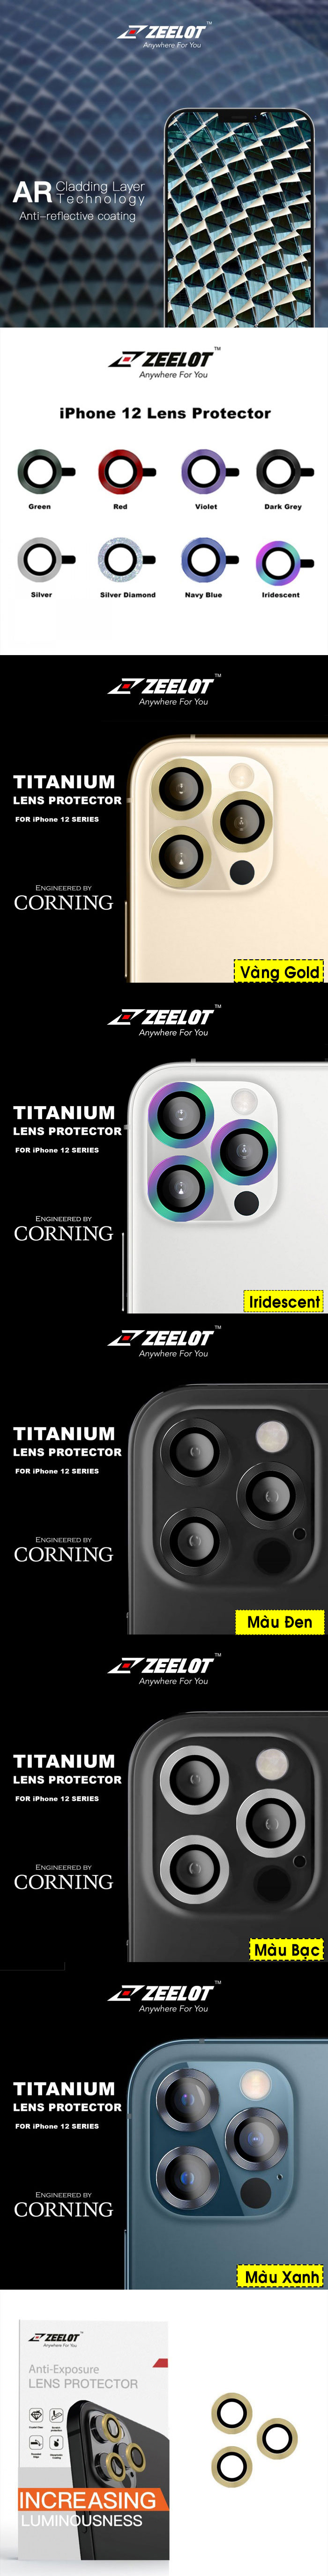 Miếng dán Camera iPhone 12 Pro Max Zeelot Titanium cường lực 32